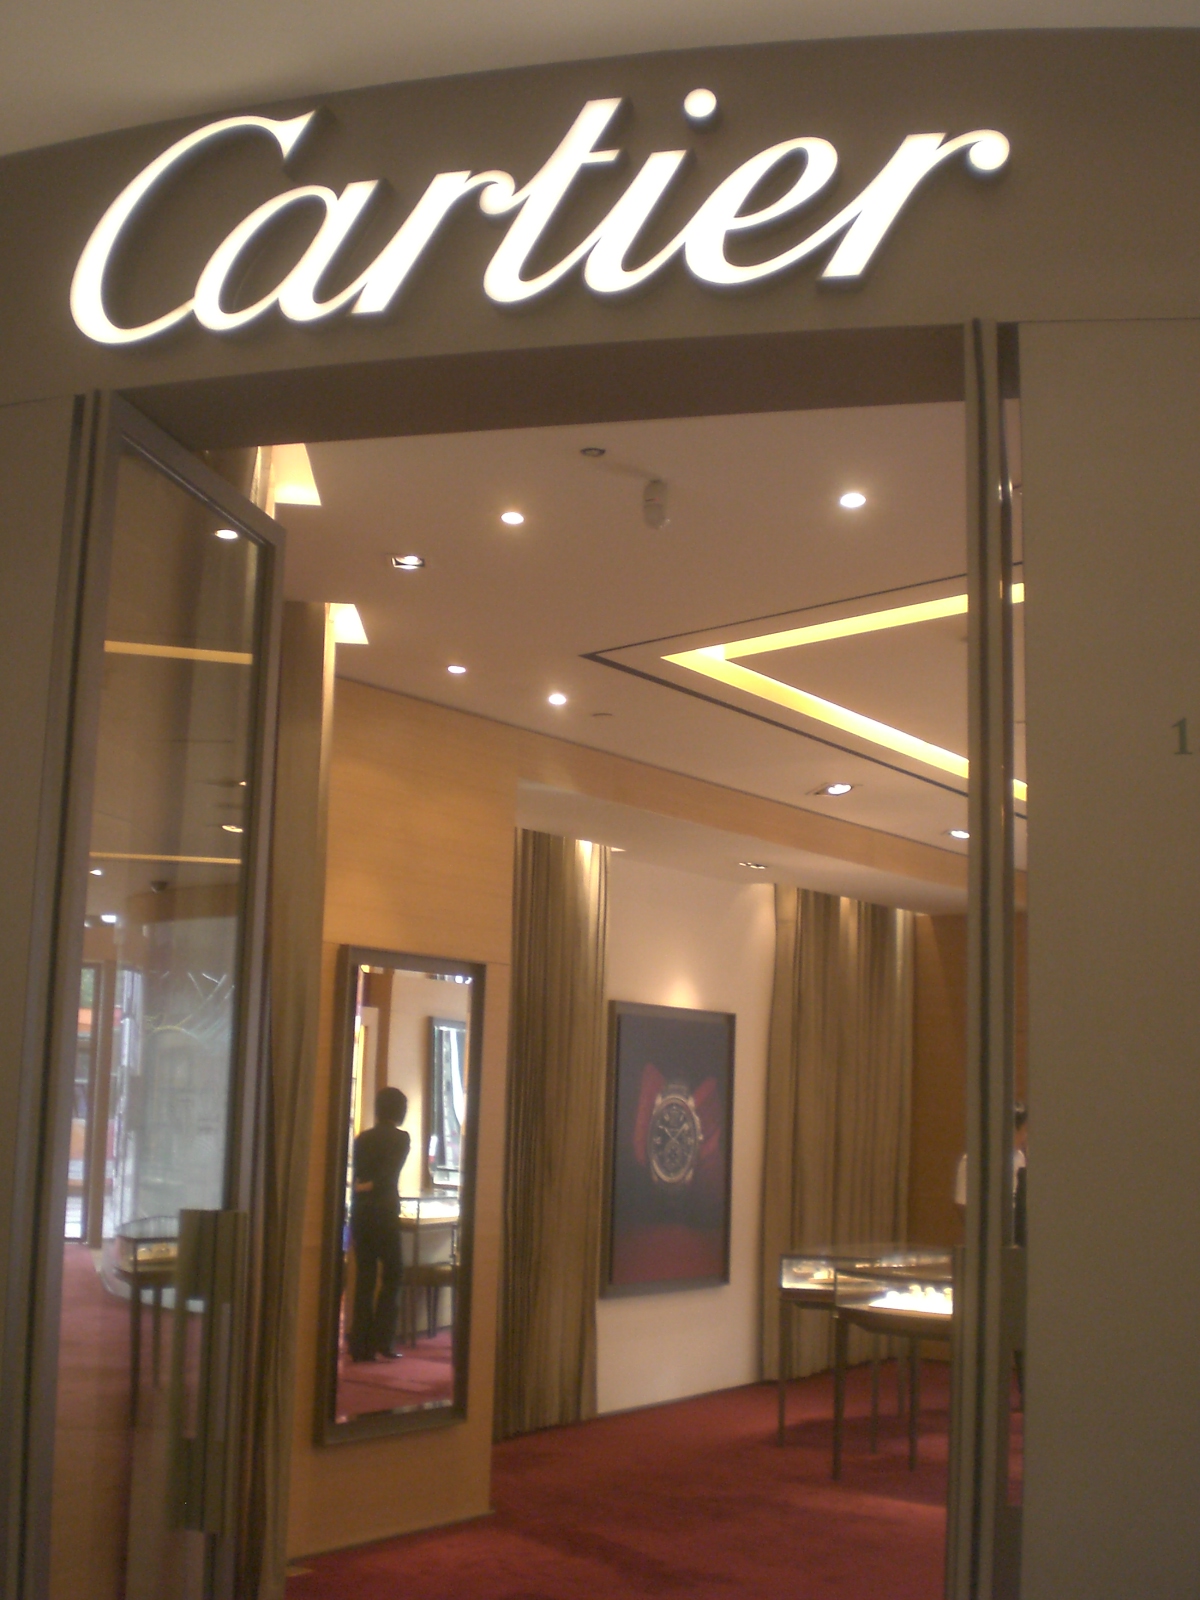 BJ 北京 Beijing 王府井 Wang Fujing Beijing APM shopping mall interior shop Cartier Aug-2010.JPG